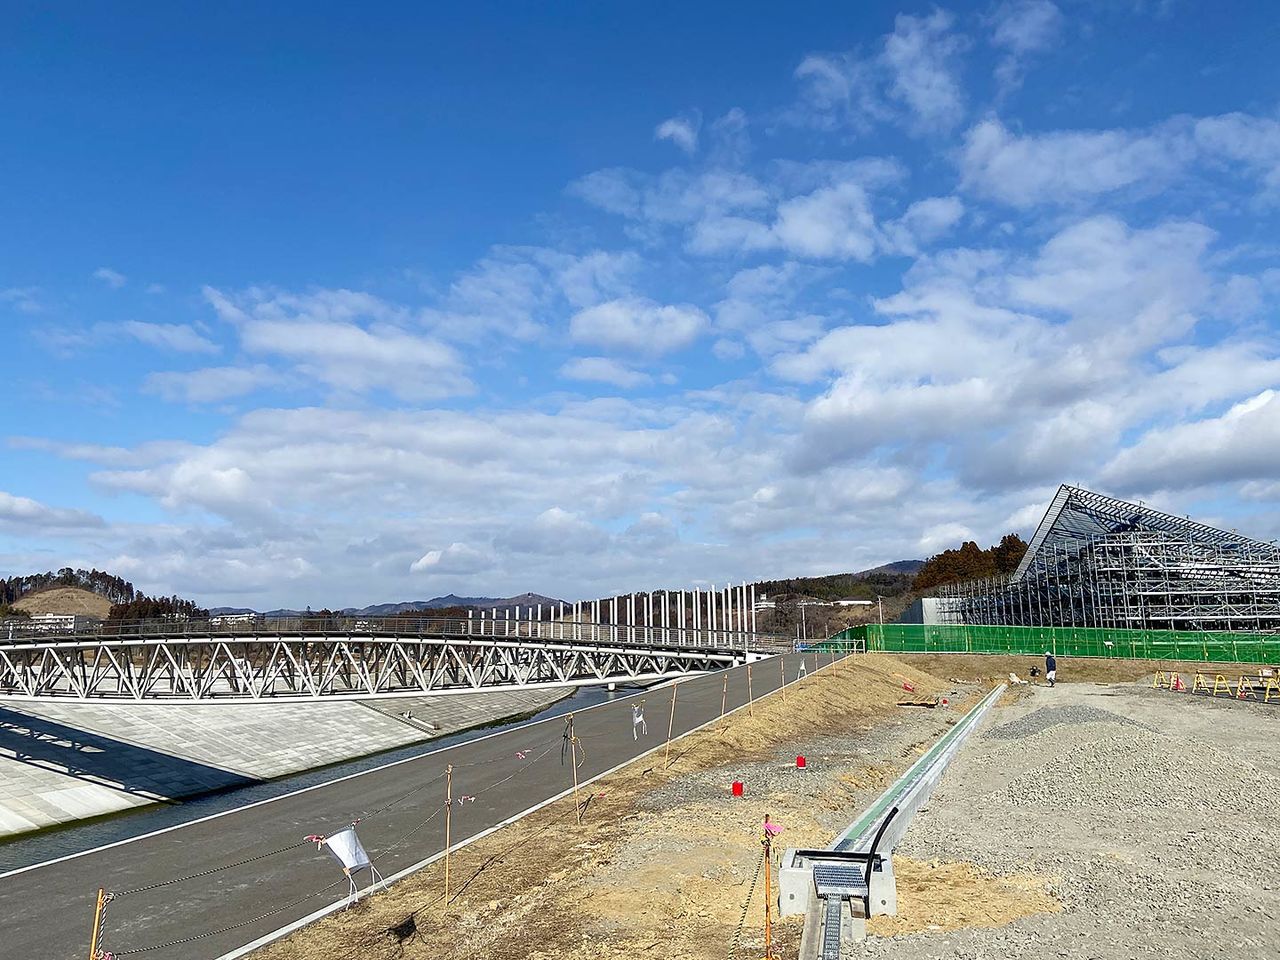 Après le tremblement de terre, l’ancienne agglomération a été surélevée d'environ 10 mètres et le pont sur la rivière a été remplacé. Le site de construction du mémorial Minami-Sanriku 311, une installation conçue par l'architecte Kuma Kengo pour transmettre la mémoire de la catastrophe, est visible au fond à droite.